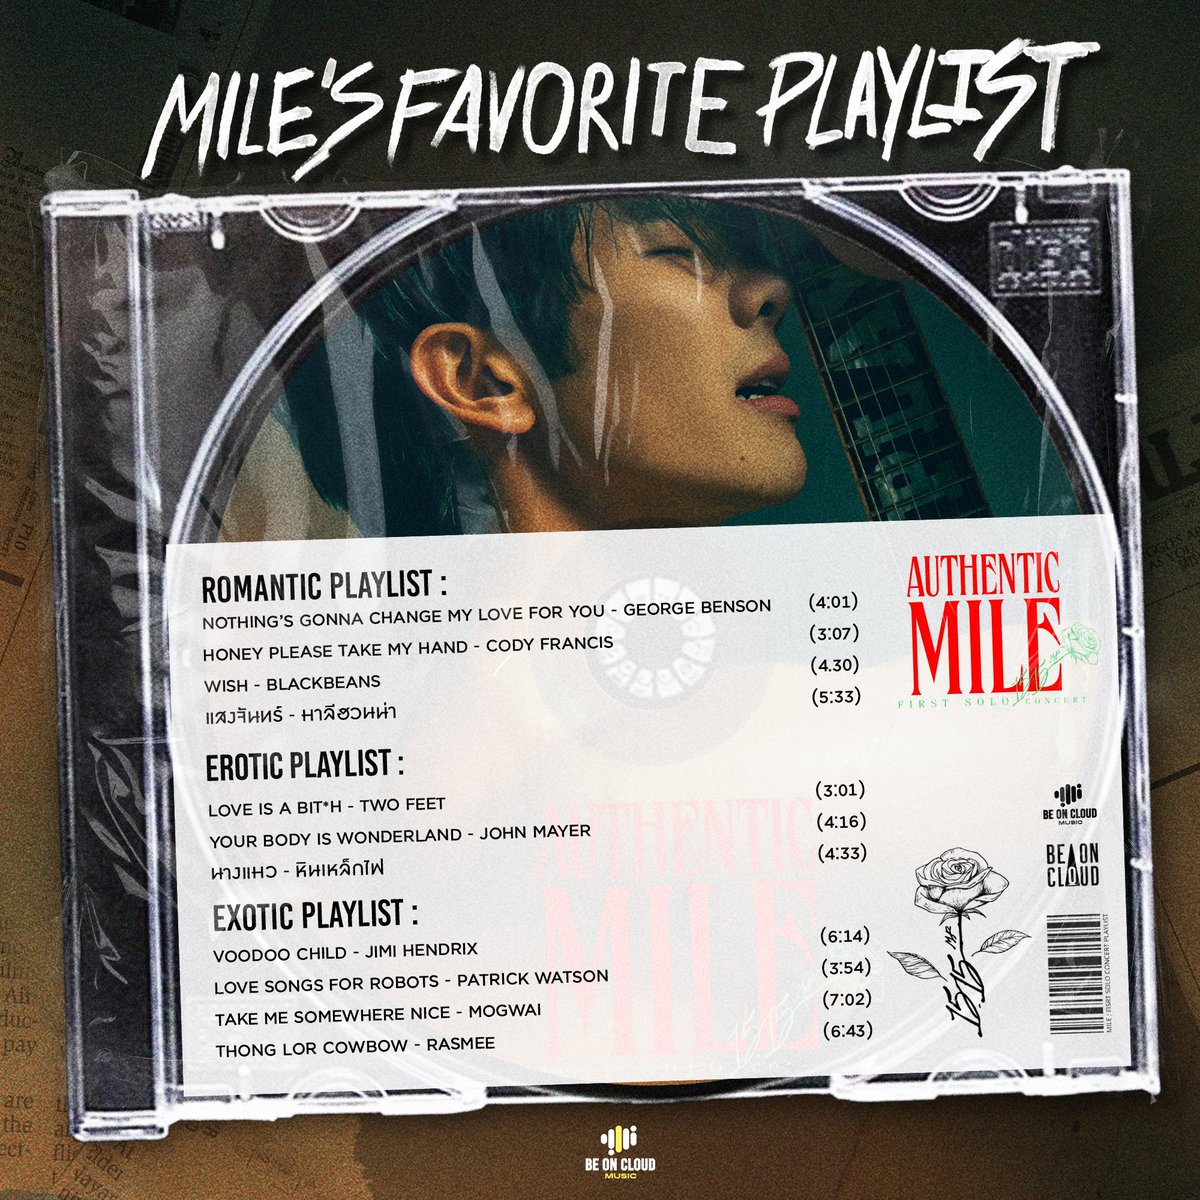 ชวนส่อง Playlist เพลงโปรดในแต่ละ Mood ที่ มาย ชอบฟัง 🎶🎸 ใครมีเพลงที่เหมาะกับ Mood ไหนอยากแนะนำ โพสต์บอกกันได้น้าา แบ่งปันเพลงกันค่ะ 😊 #Mile1stSoloConcert #BEONCLOUDMUSIC